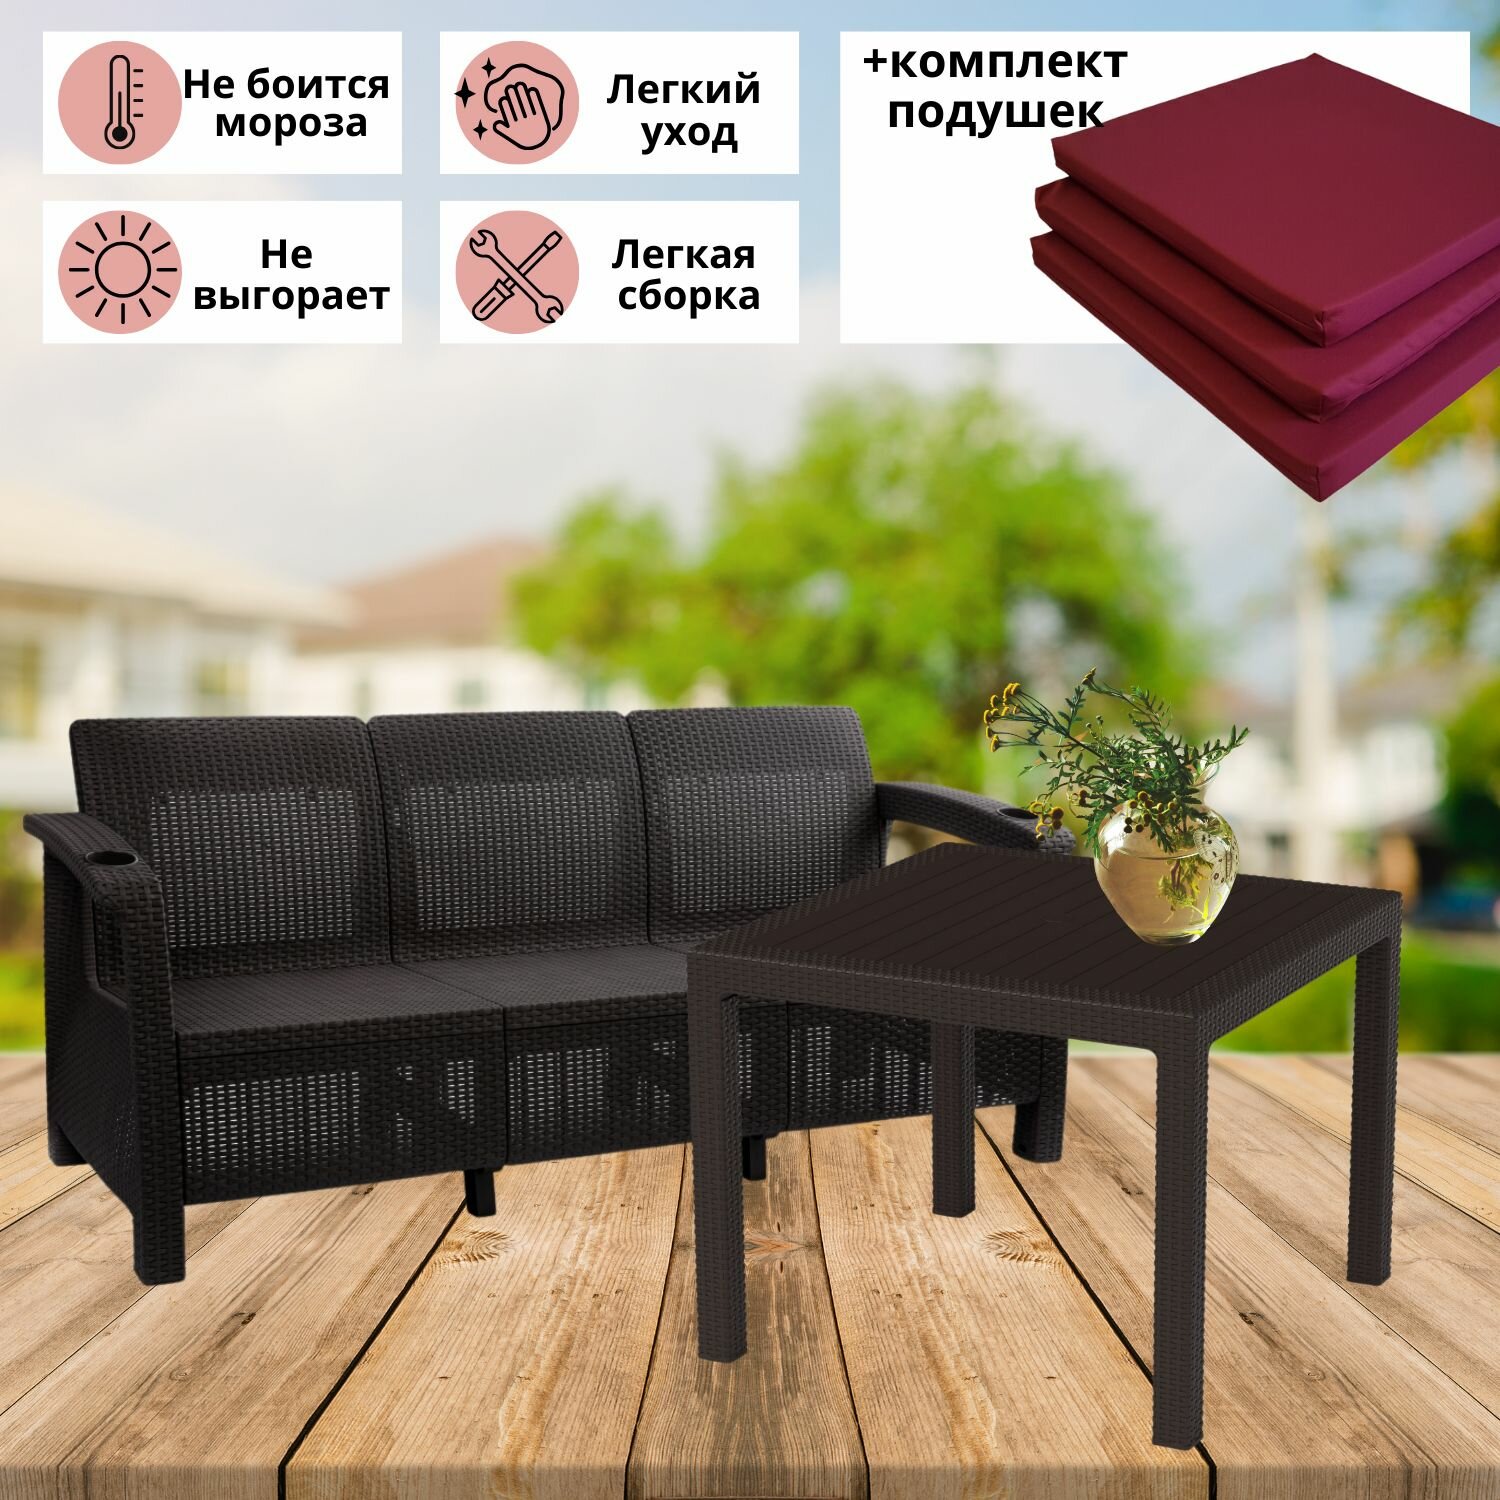 Садовая мебель. Комплект Фазенда-3 трехместный диван и обеденный стол, искуственный ротанг, мокко, бордовые подушки